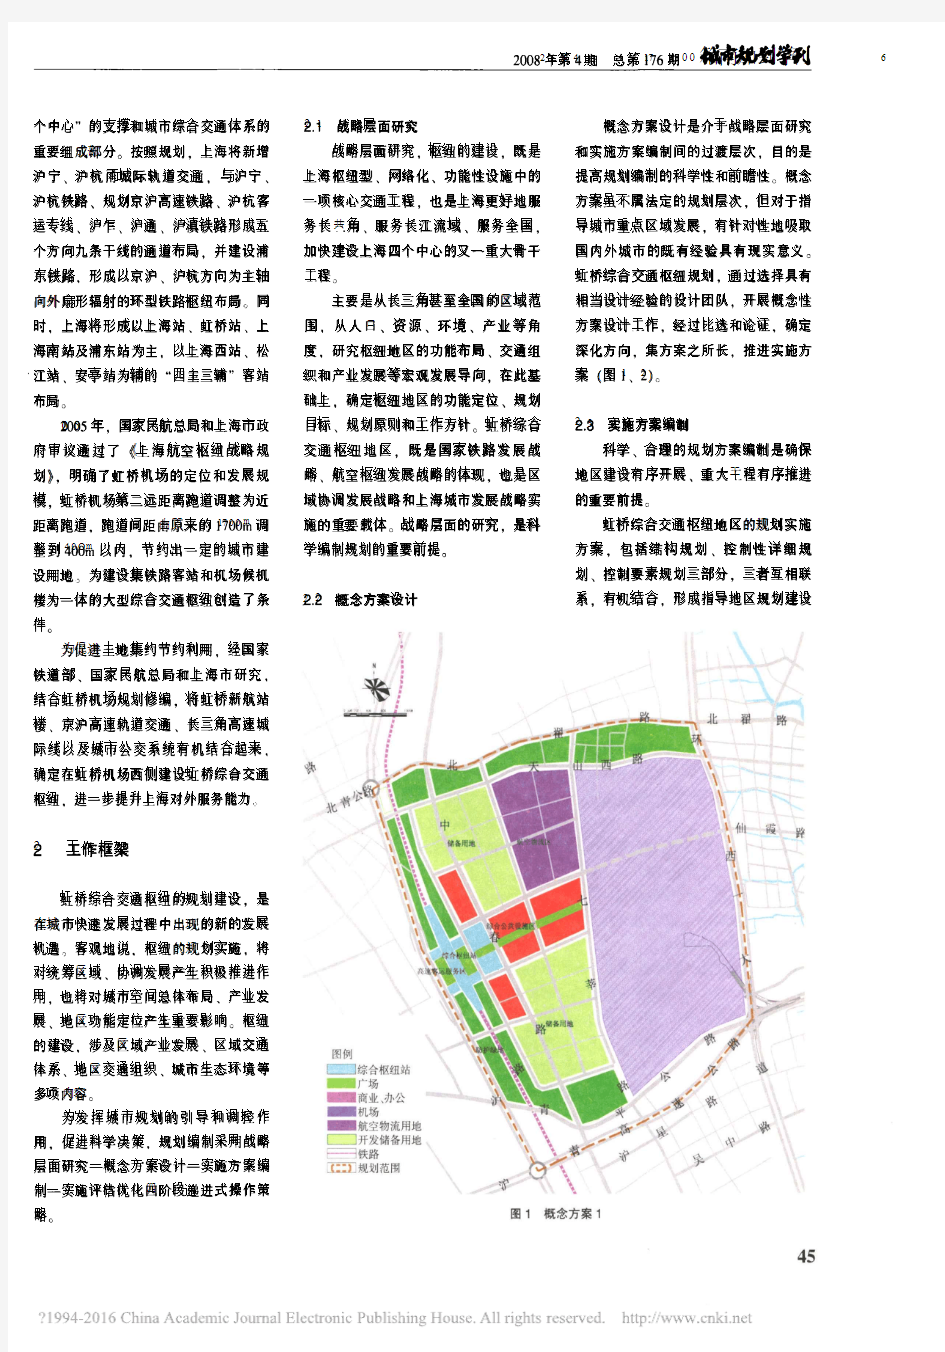 上海虹桥综合交通枢纽地区规划